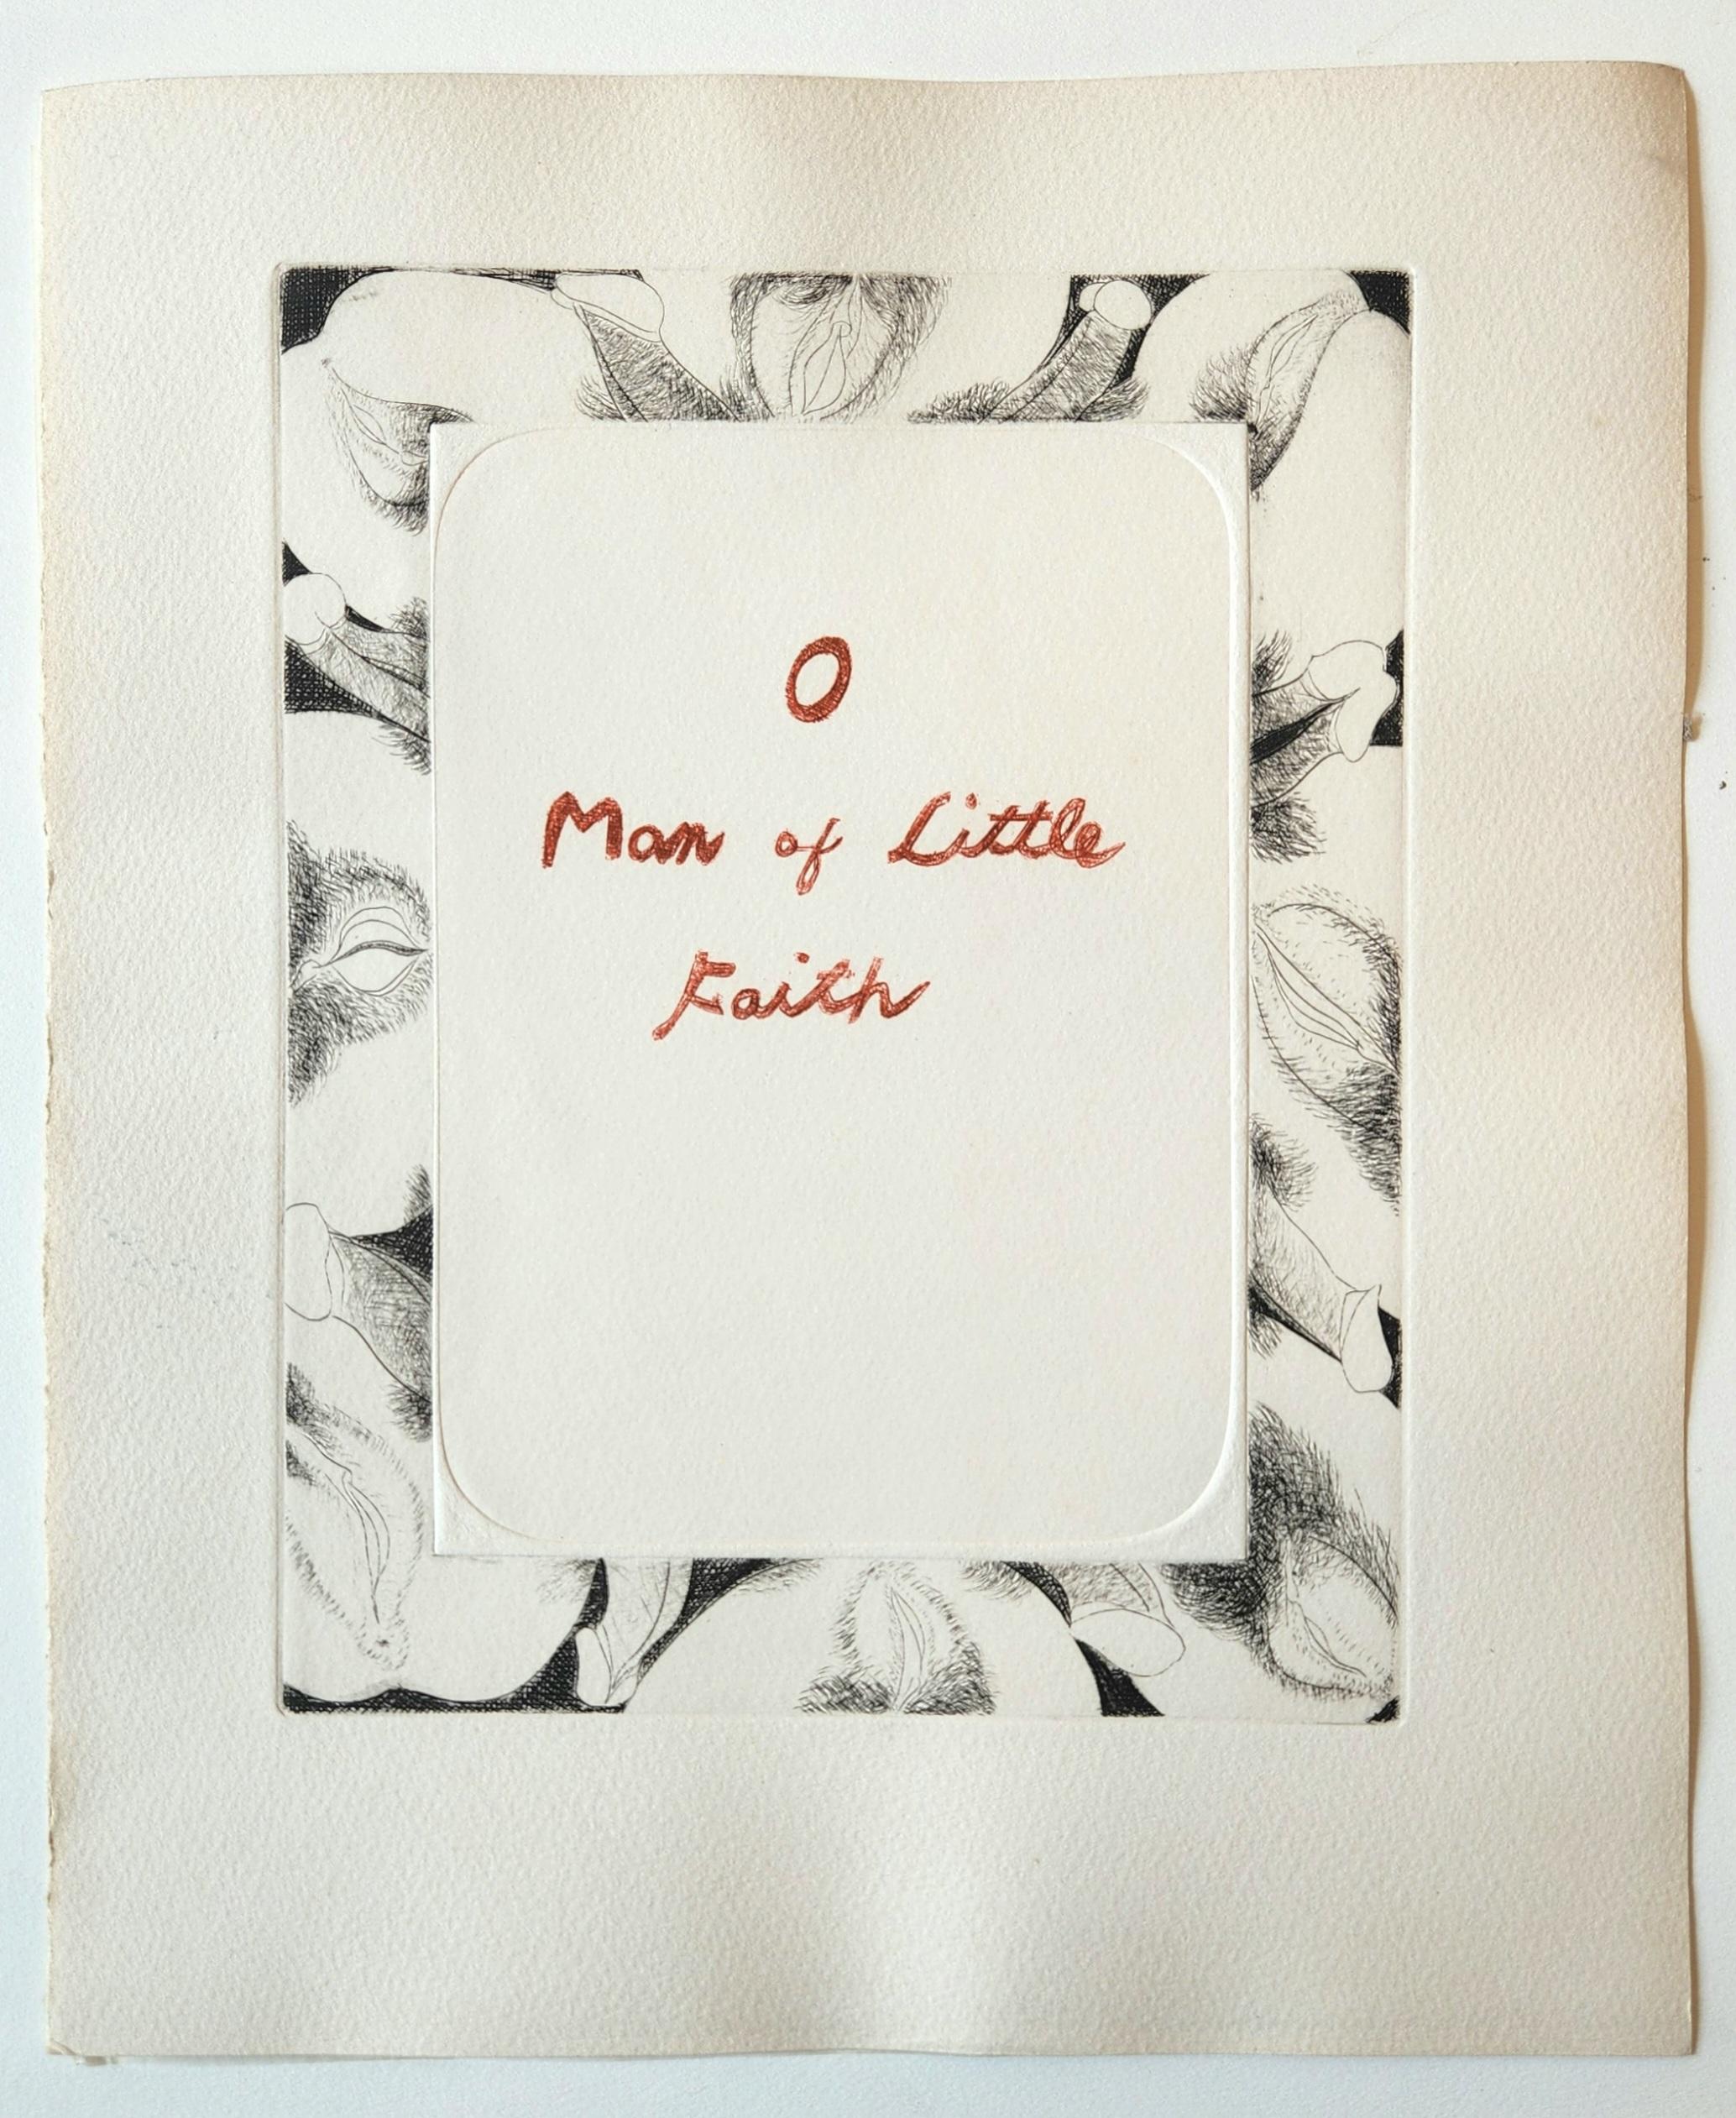 Édition unique du livre de gravures contemporaines Shunga -- O Man of Little Faith (Homme de peu de foi)